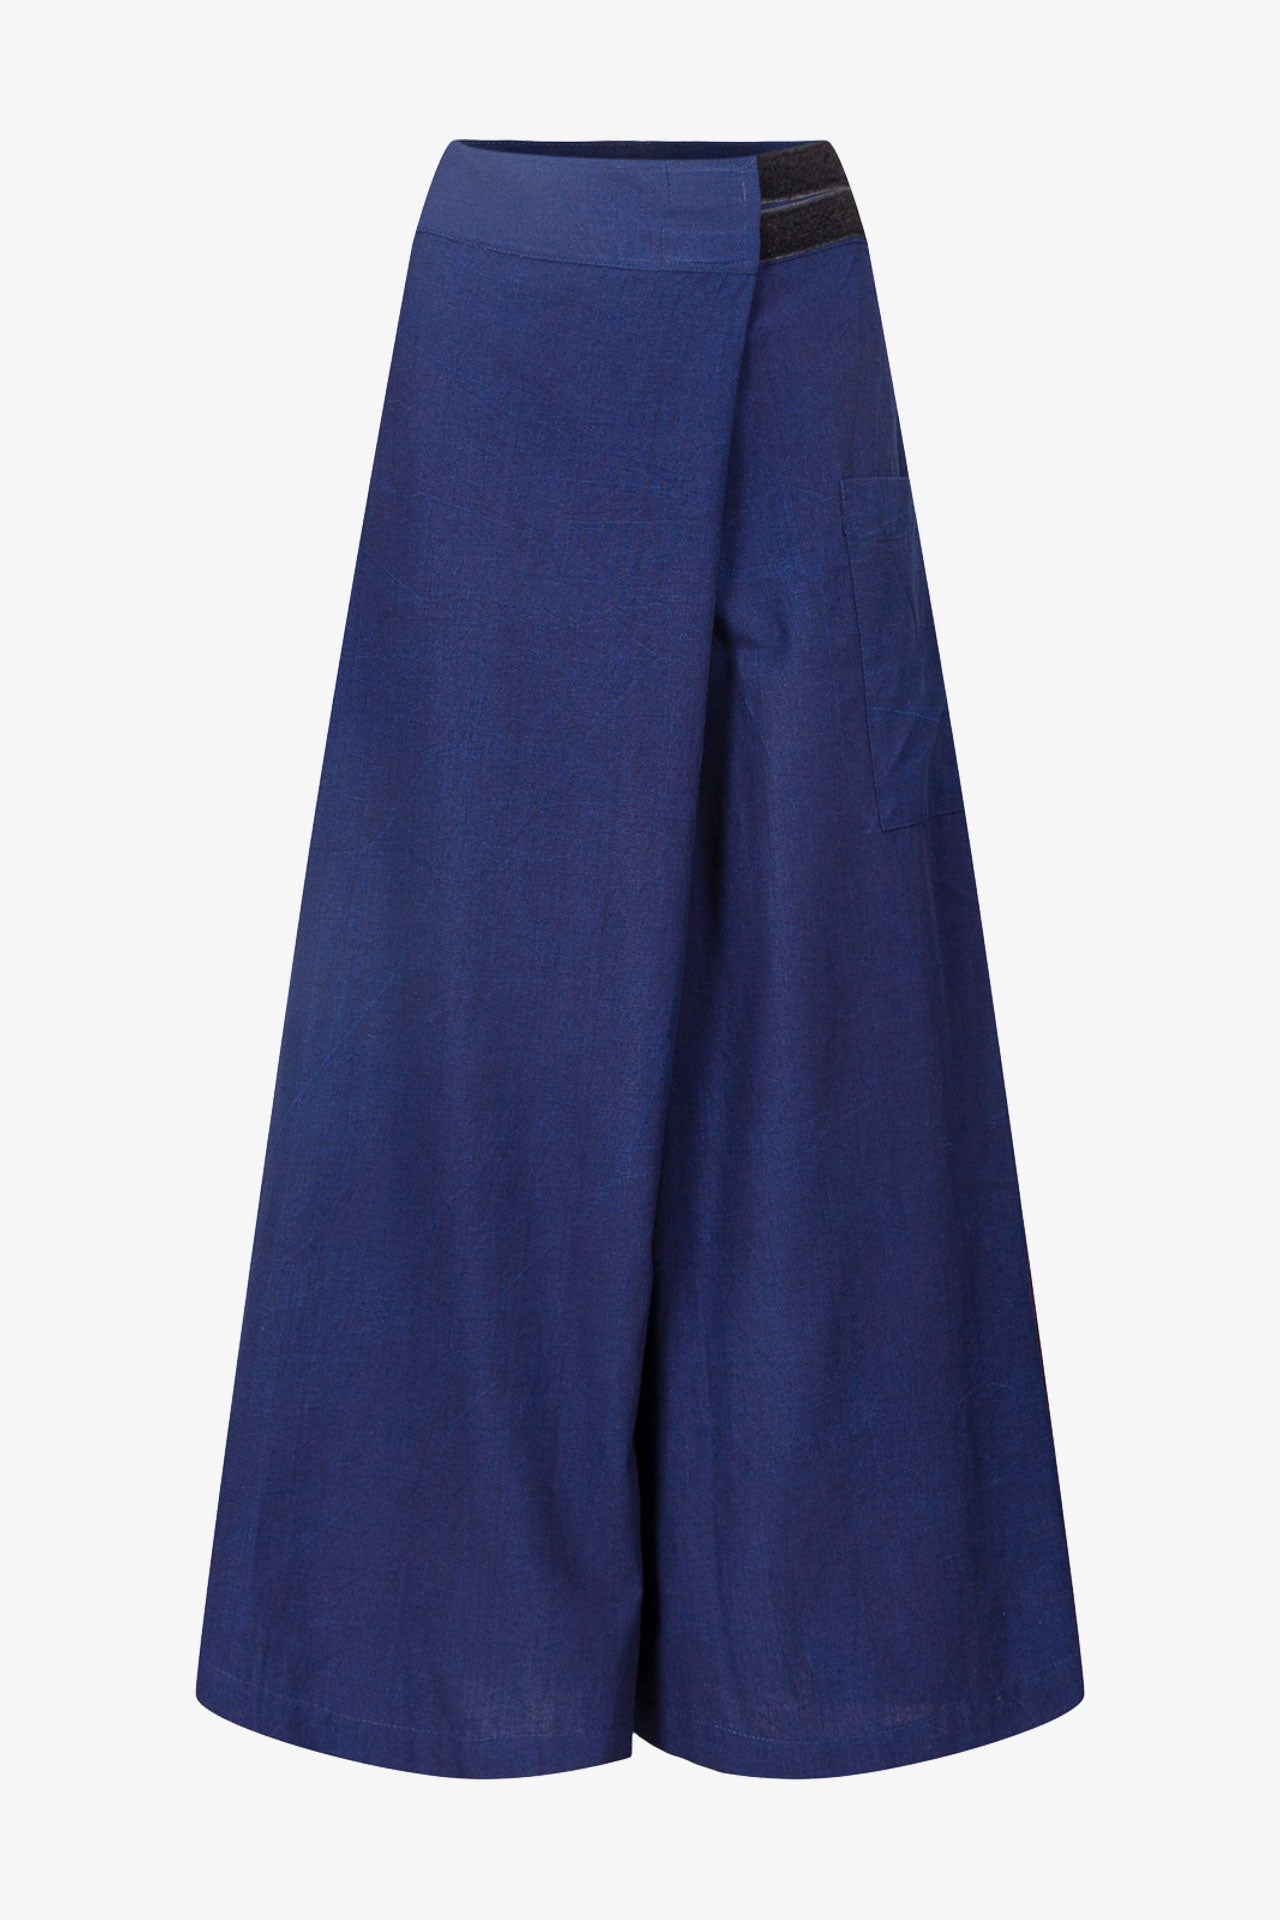 Pantalon Bali Bleu De Chine